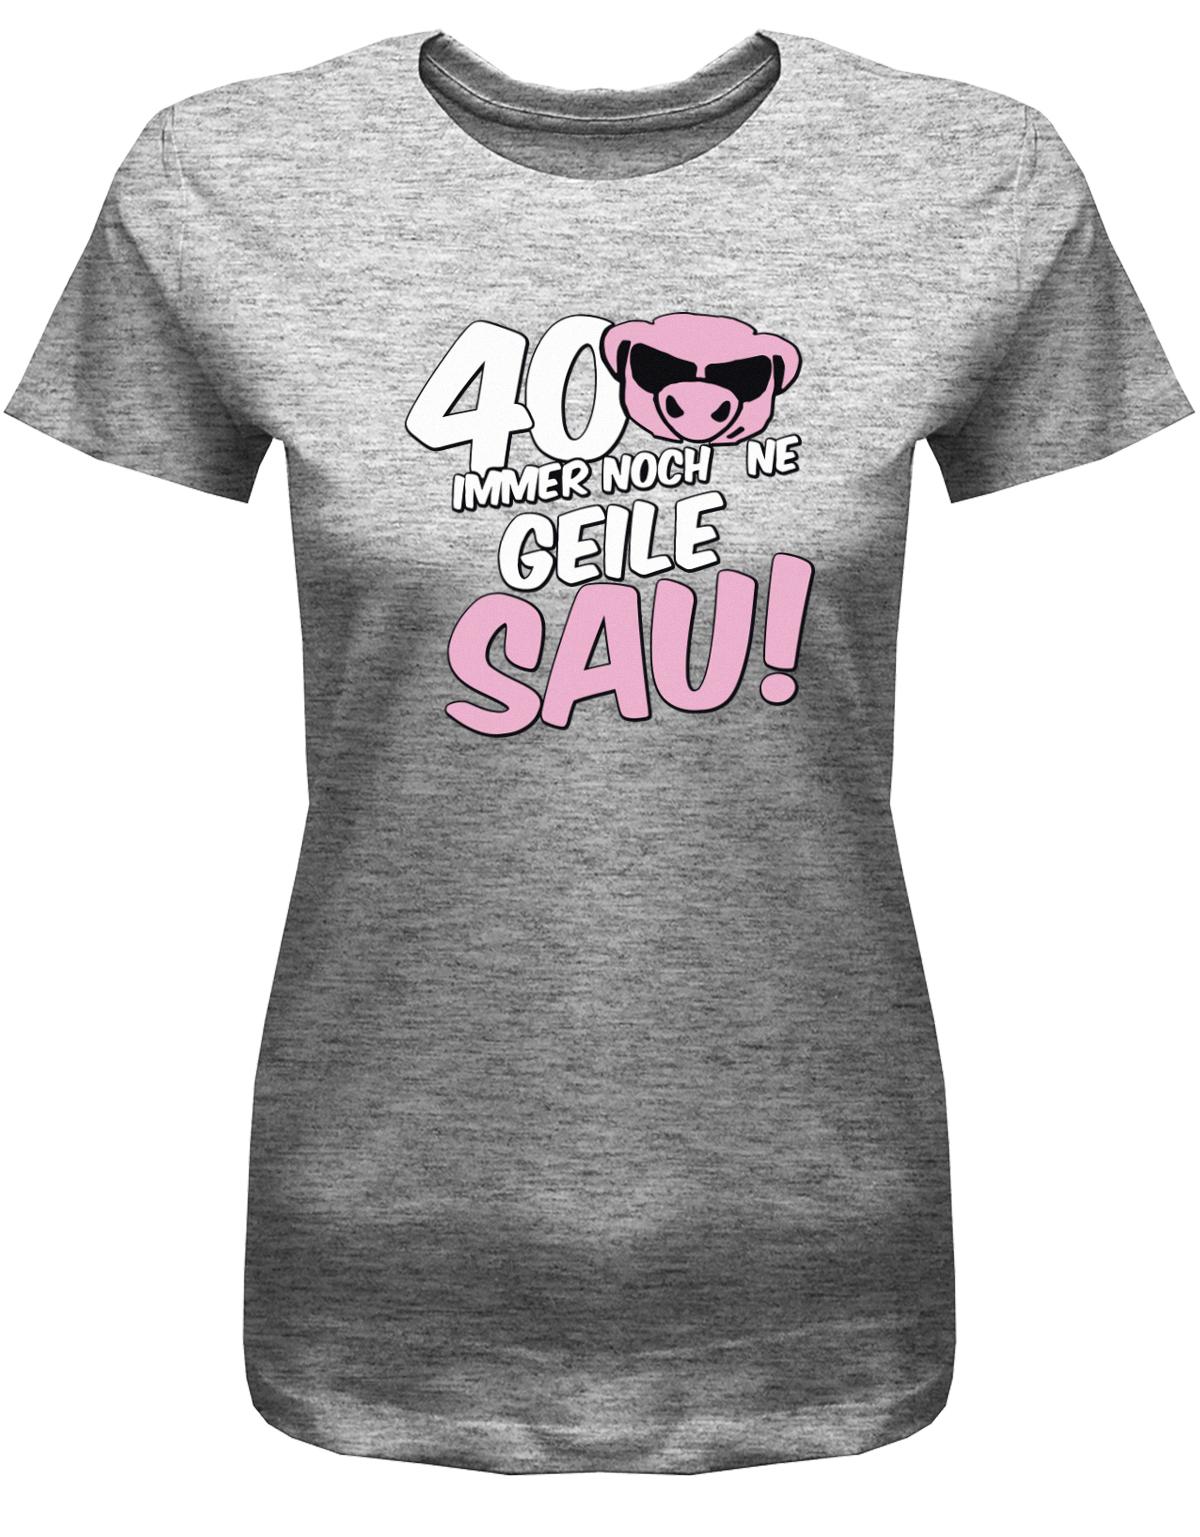 Lustiges T-Shirt zum 40 Geburtstag für die Frau Bedruckt mit 40 Immer noch 'ne geile Sau! Sau mit Sonnenbrille Grau